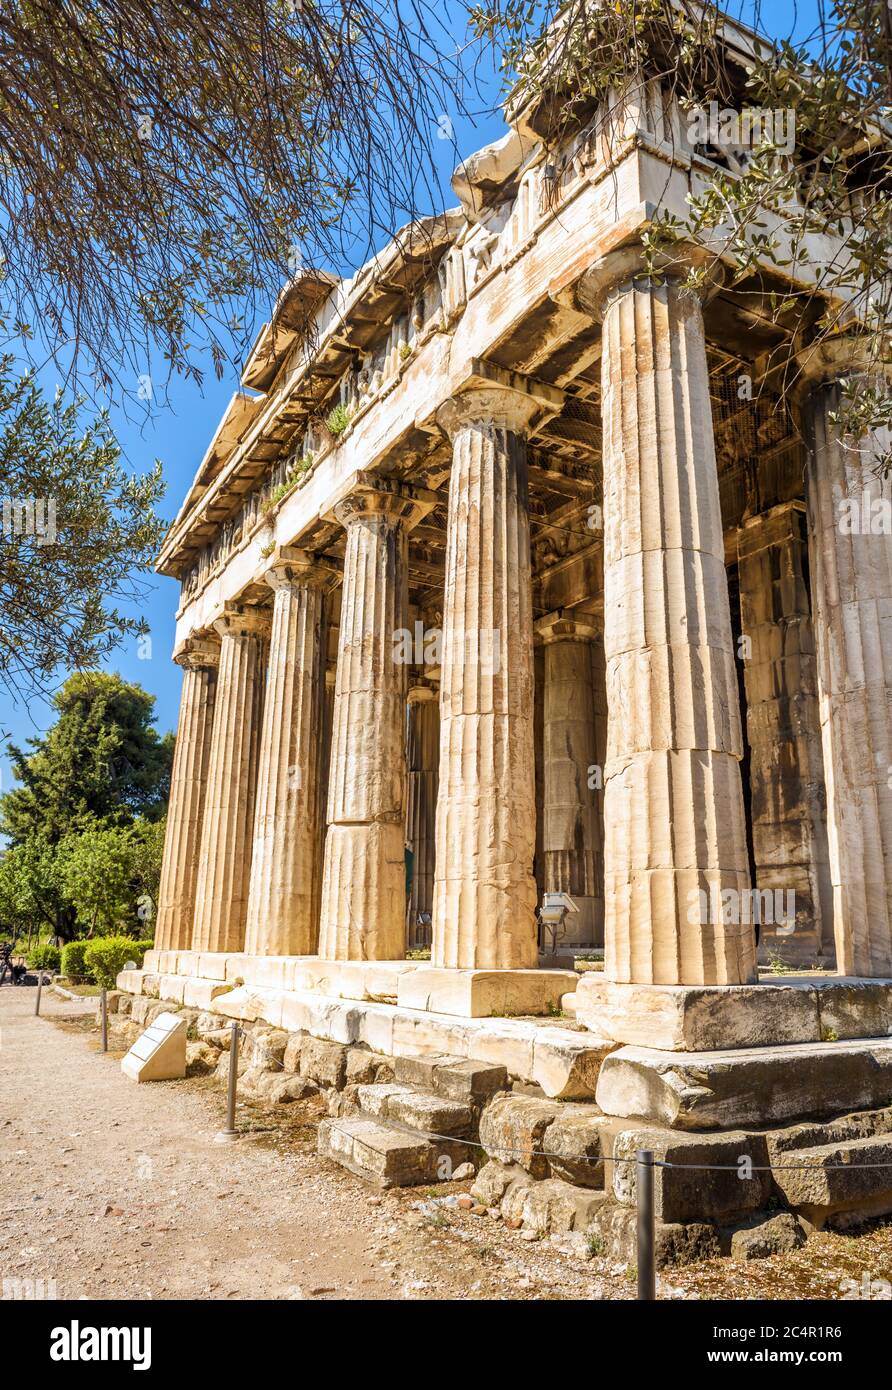 Tempel des Hephaestus in Athen, Griechenland. Es ist eines der wichtigsten Wahrzeichen von Athen. Landschaftlich schöner Blick auf die antiken griechischen Ruinen im Zentrum von Athen. Berühmte Geschichte Stockfoto